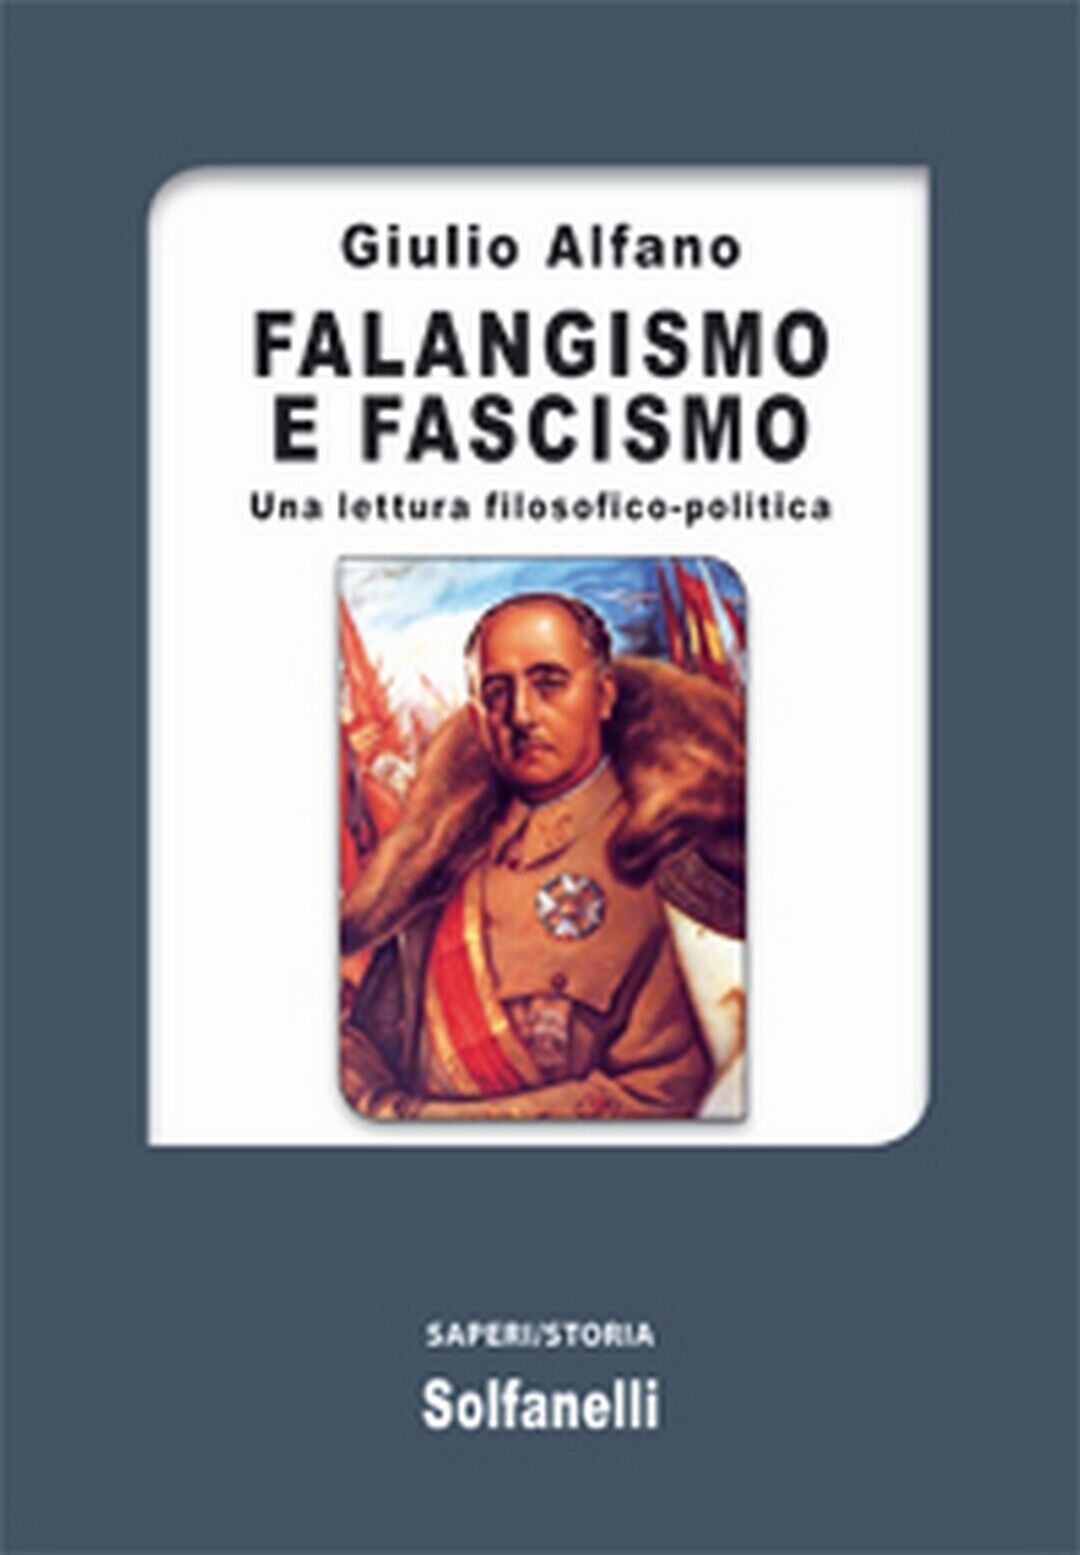 FALANGISMO E FASCISMO Una lettura filosofico-politica, Giulio Alfano,  Solfanel.